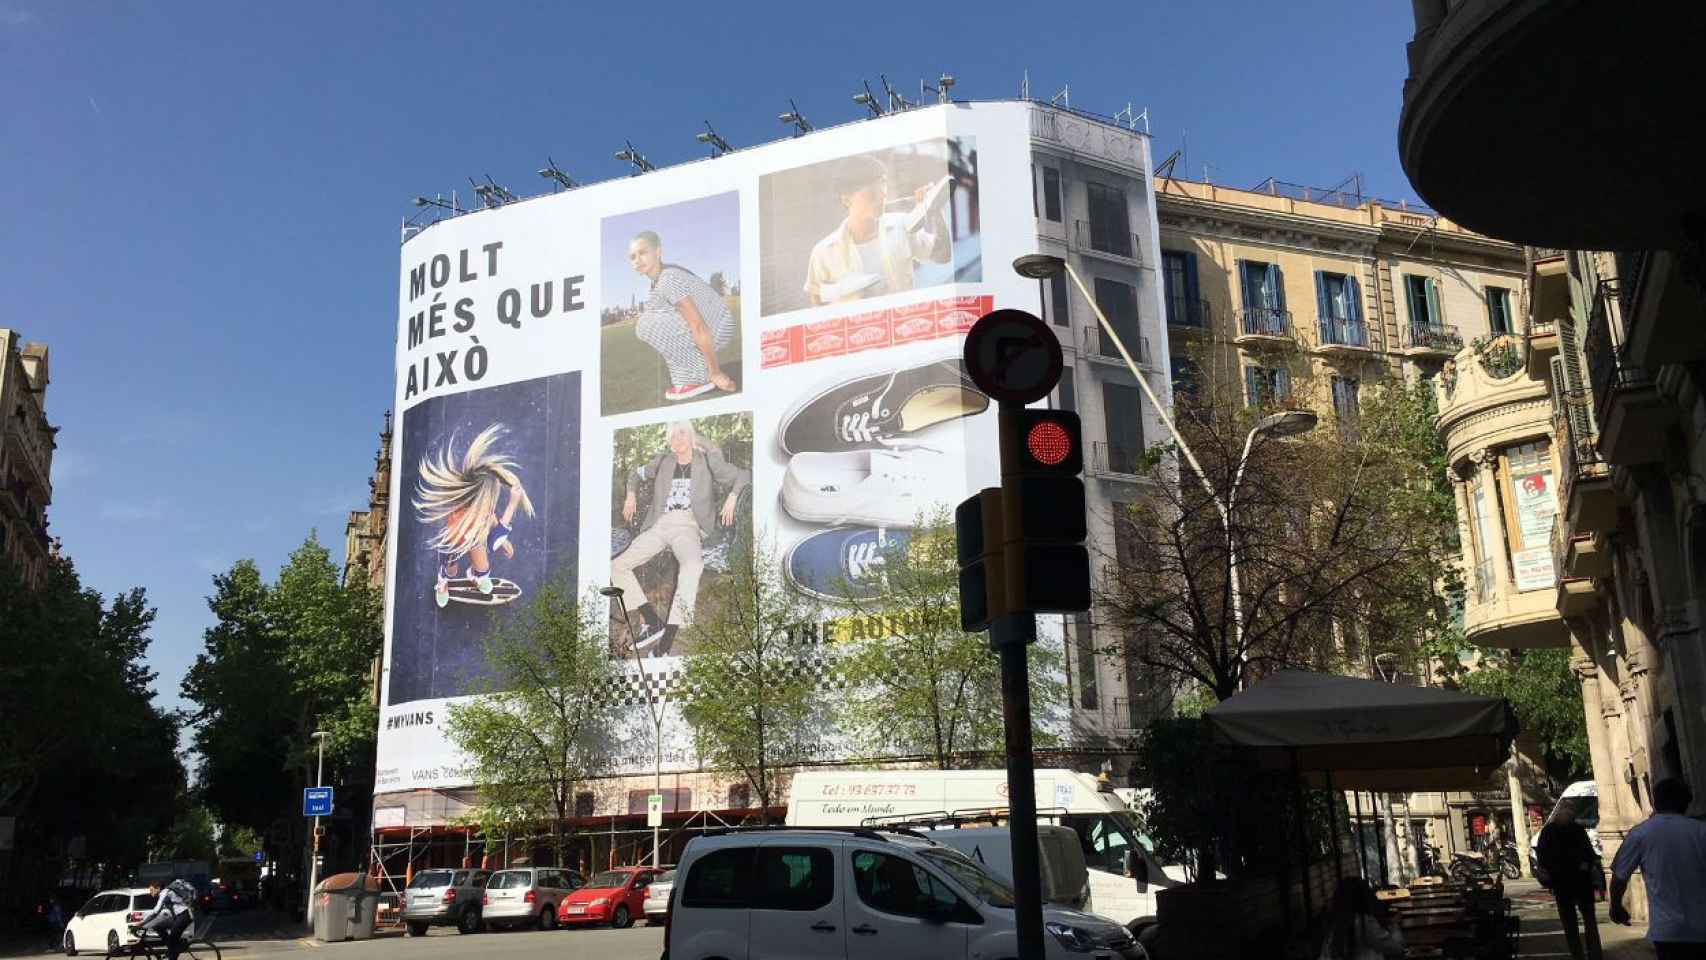 En Barcelona están proliferando las fachadas envueltas con publicidad